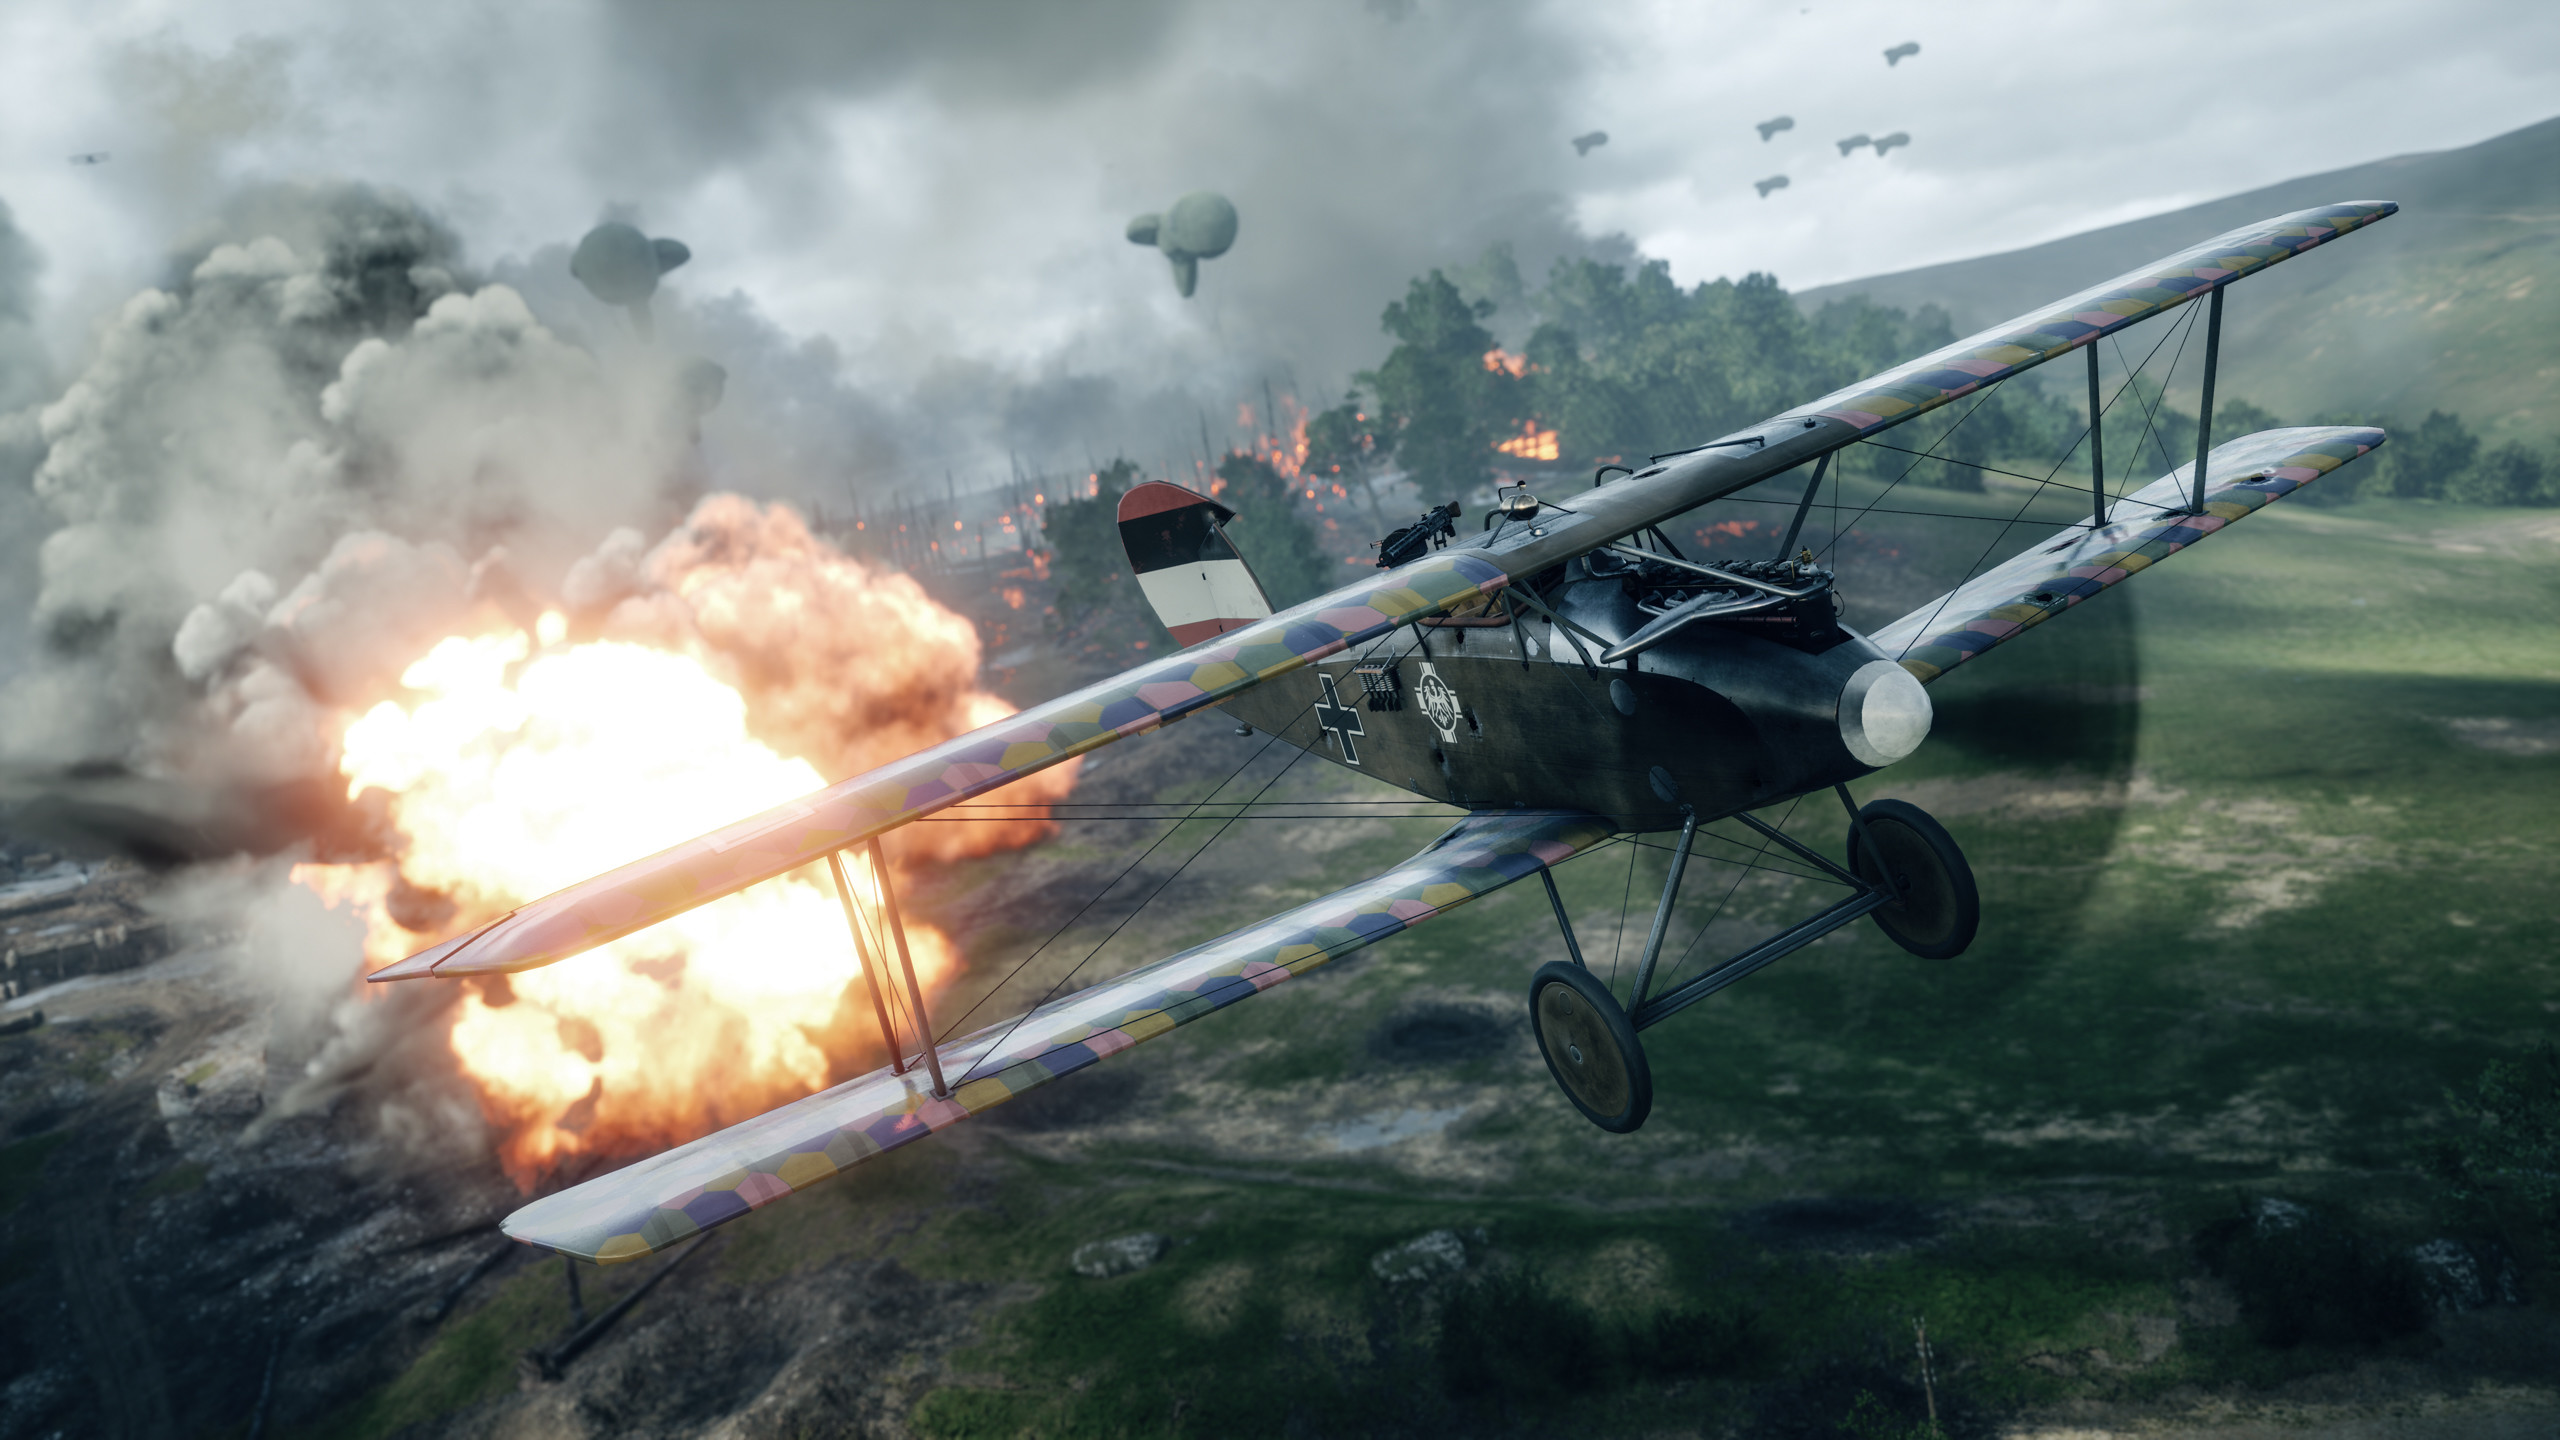 2560x1440 Computerspiele - Battlefield 1 Flugzeug Biplane Feuer Wallpaper